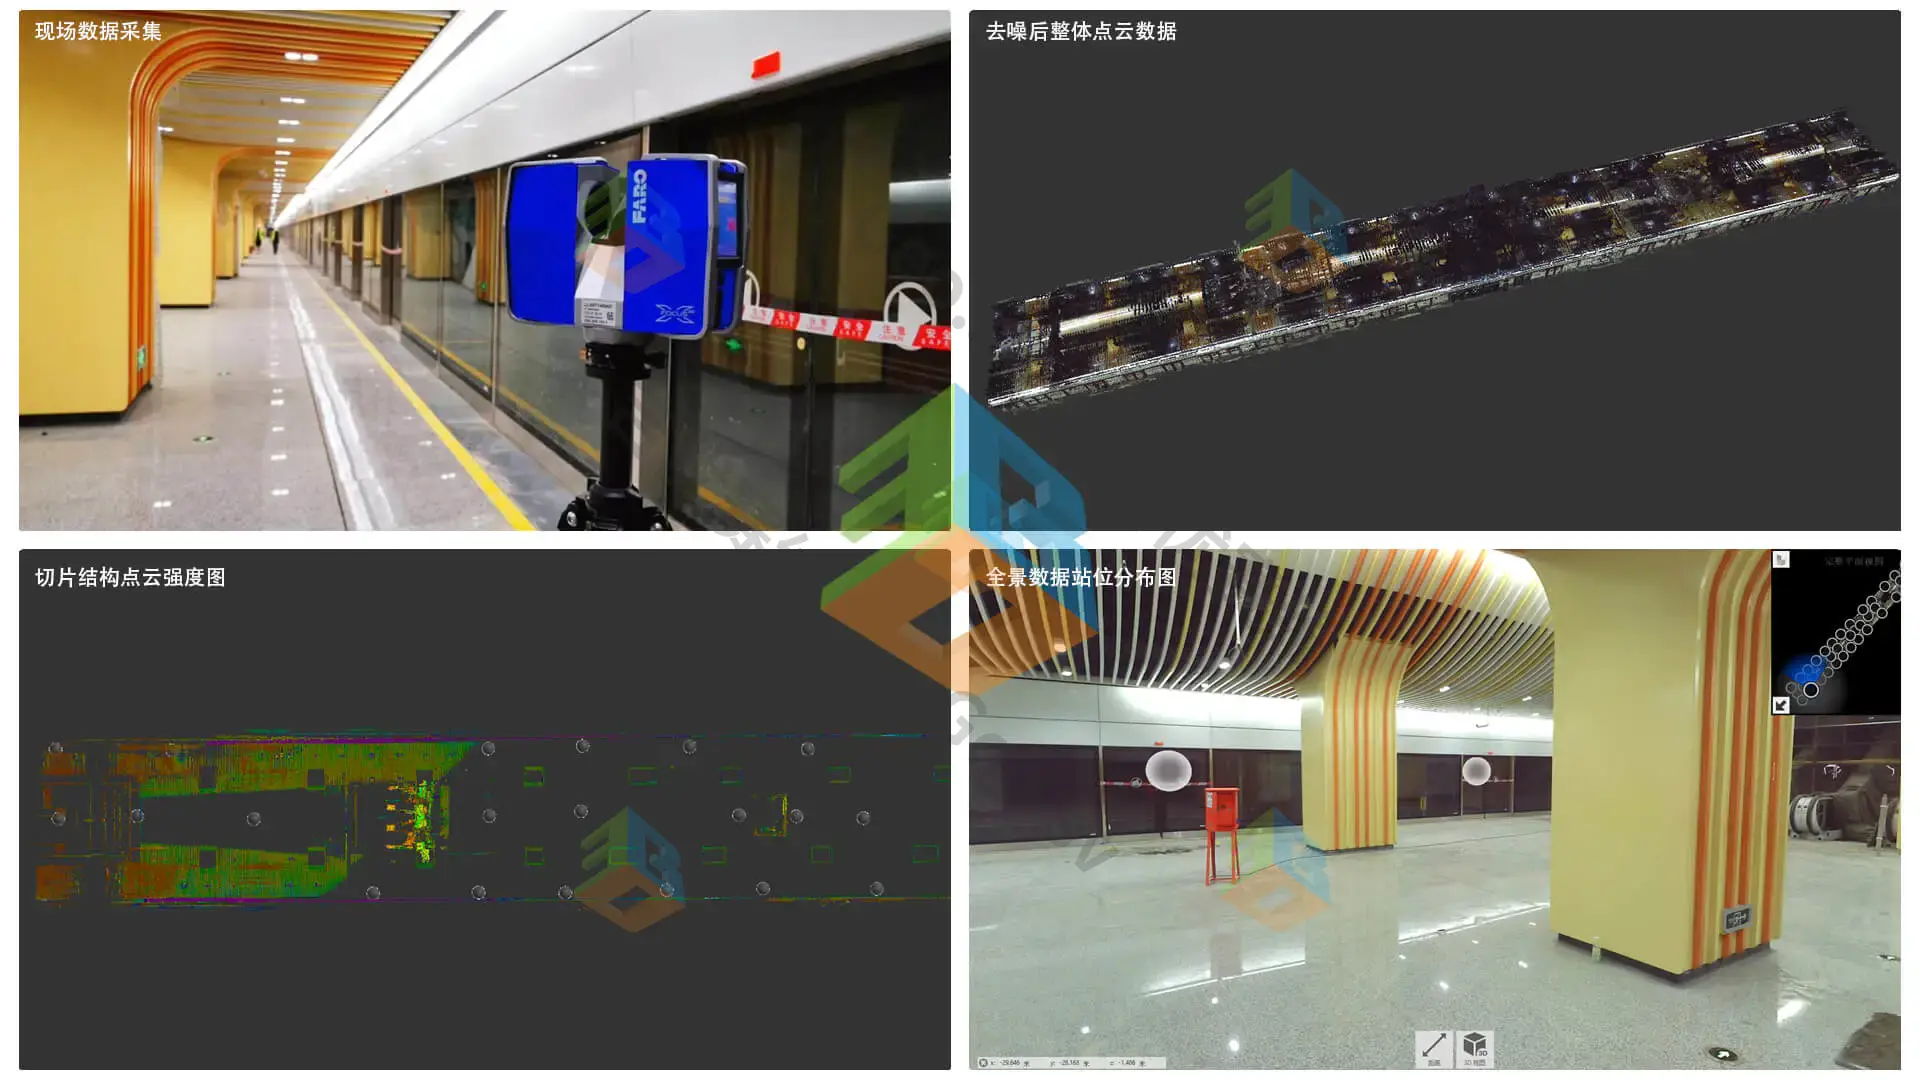 三維激光掃描技術在地鐵站中的應用